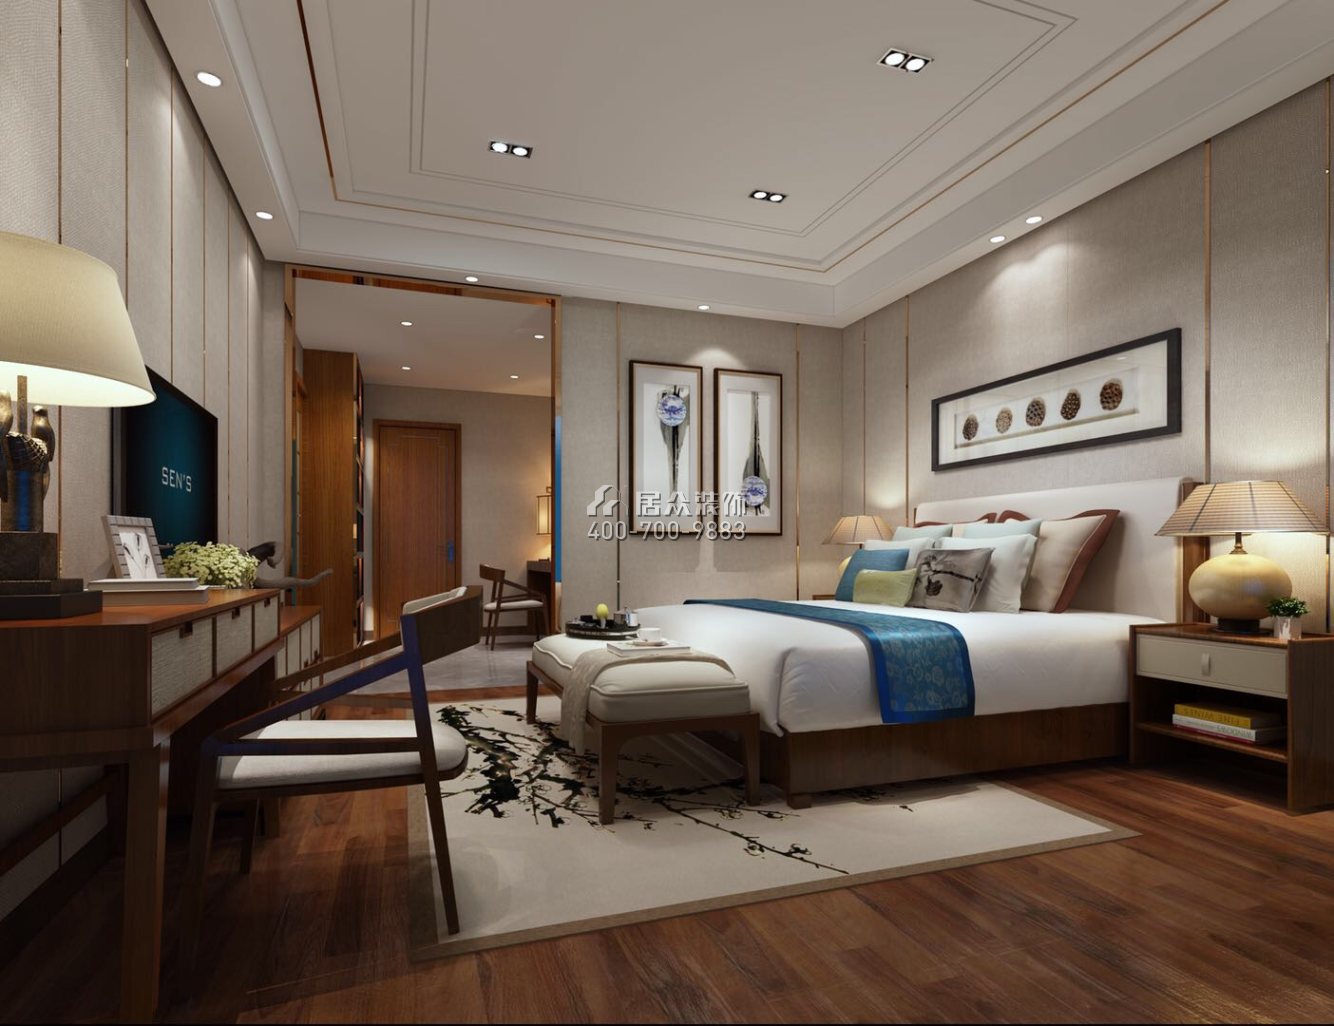 栖棠映山188平方米中式风格平层户型卧室装修效果图